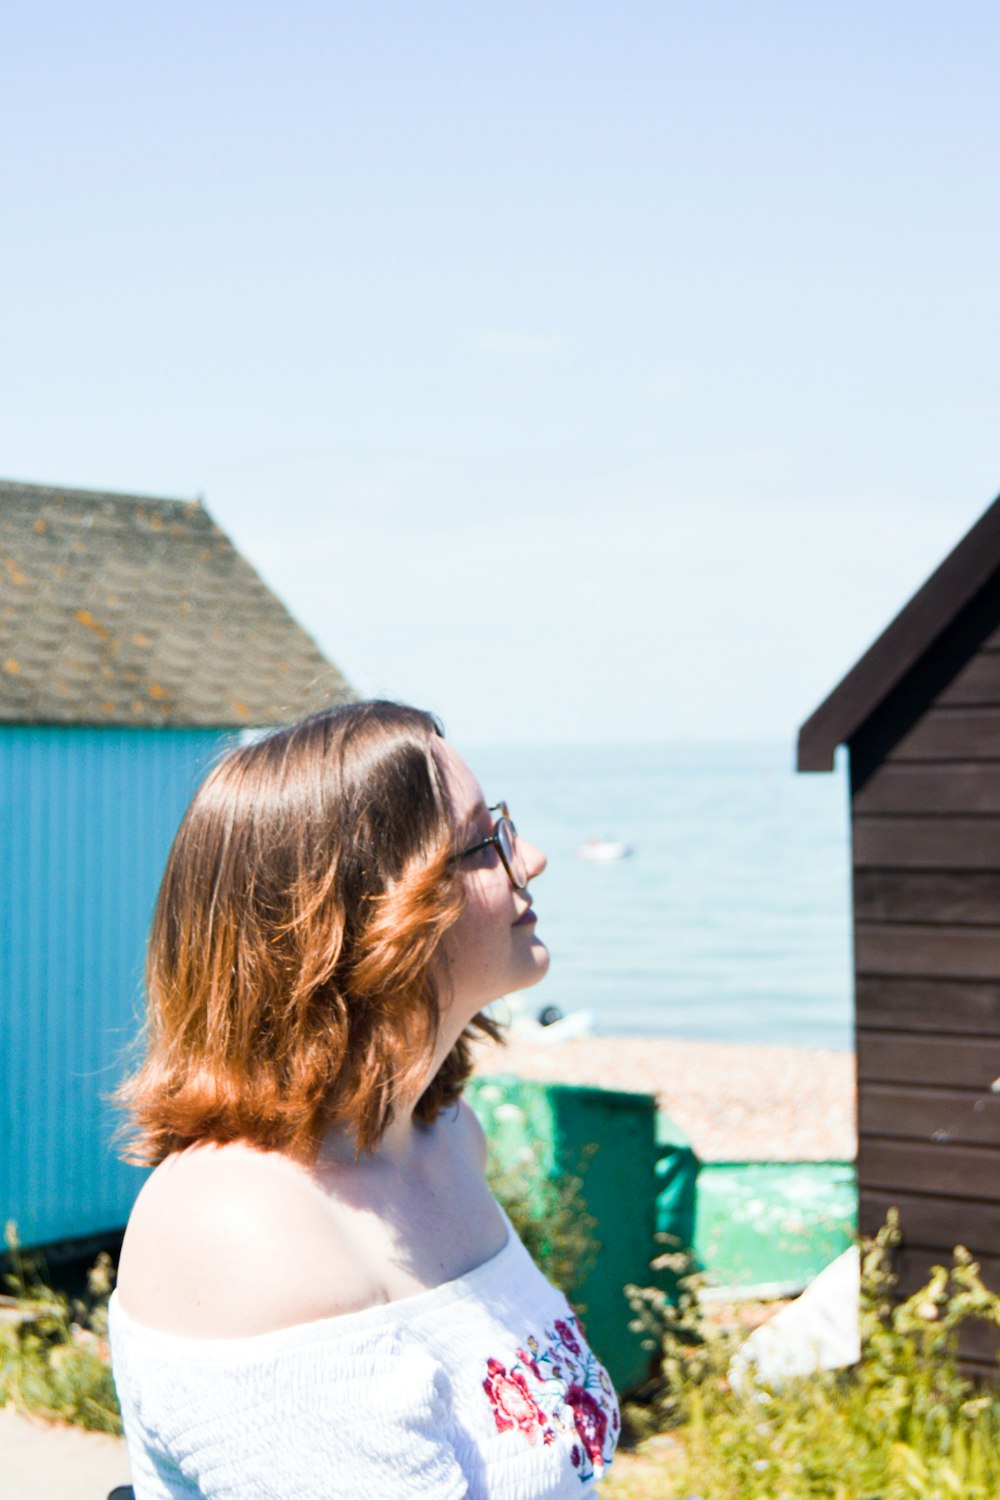 femme en débardeur blanc portant des lunettes de soleil regardant une maison en bois bleu pendant la journée